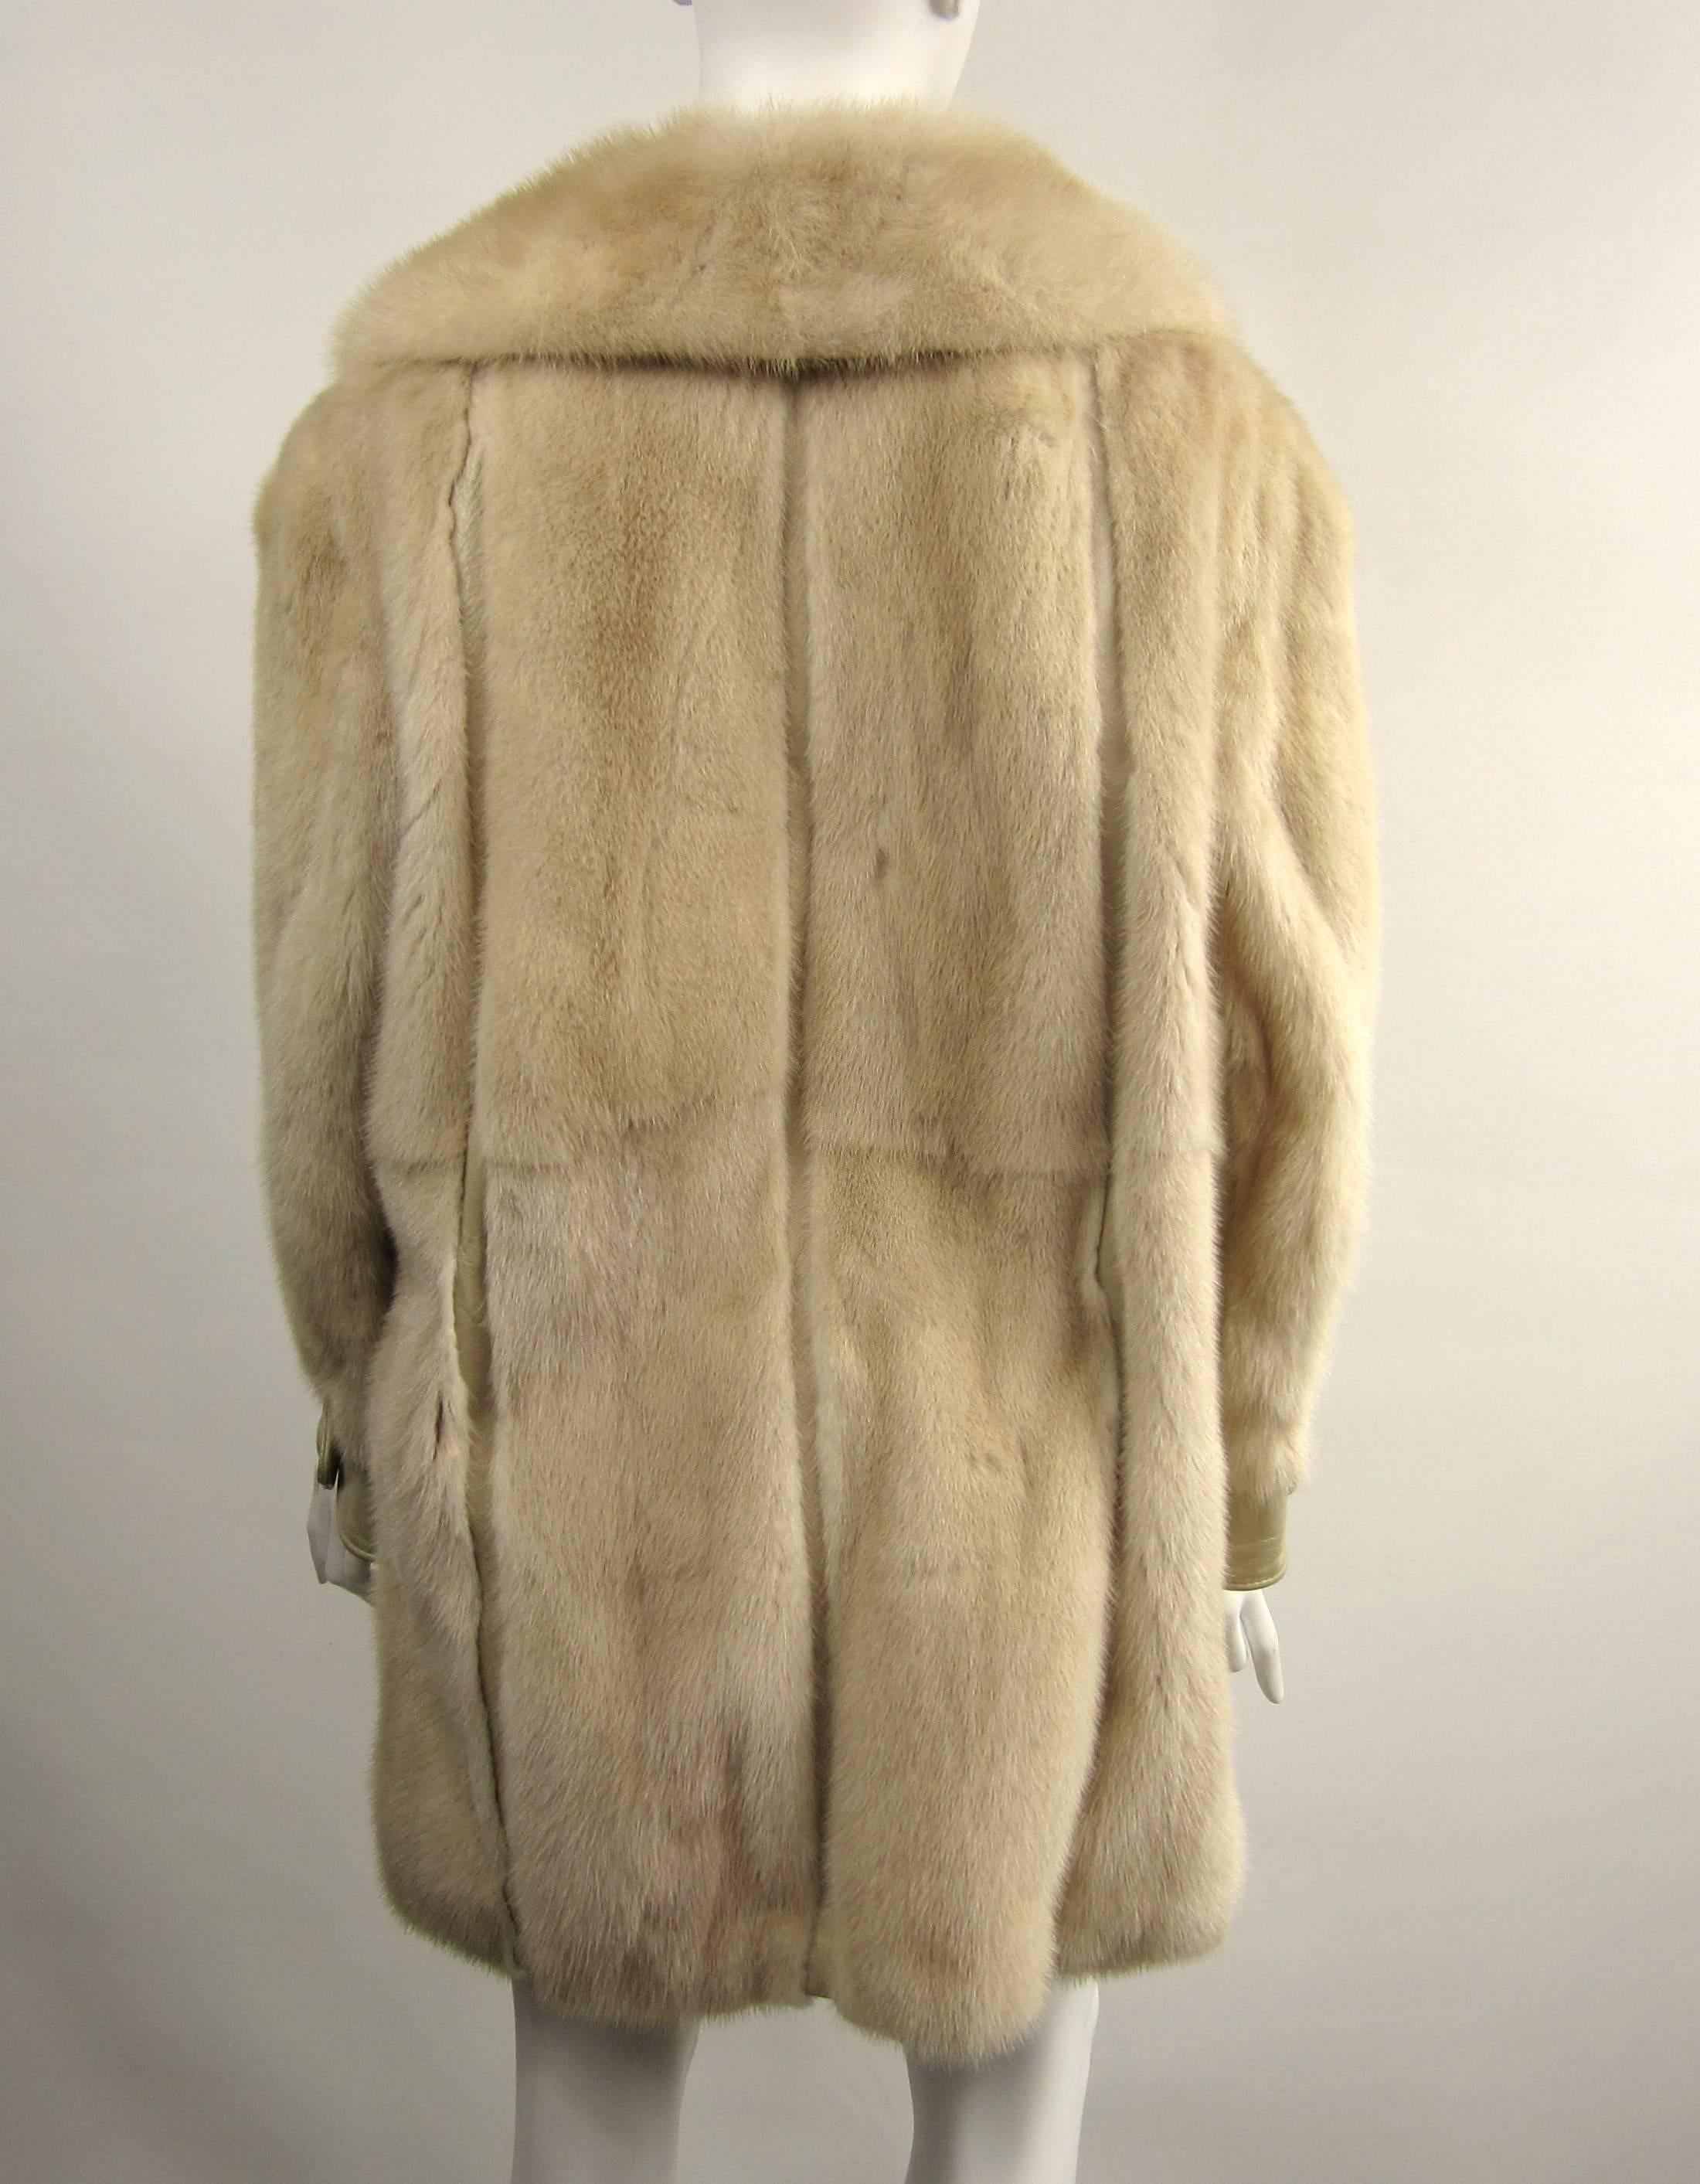 Brown Mink Fur Cream Jacket Large Coat - Vintage 1970's Mod